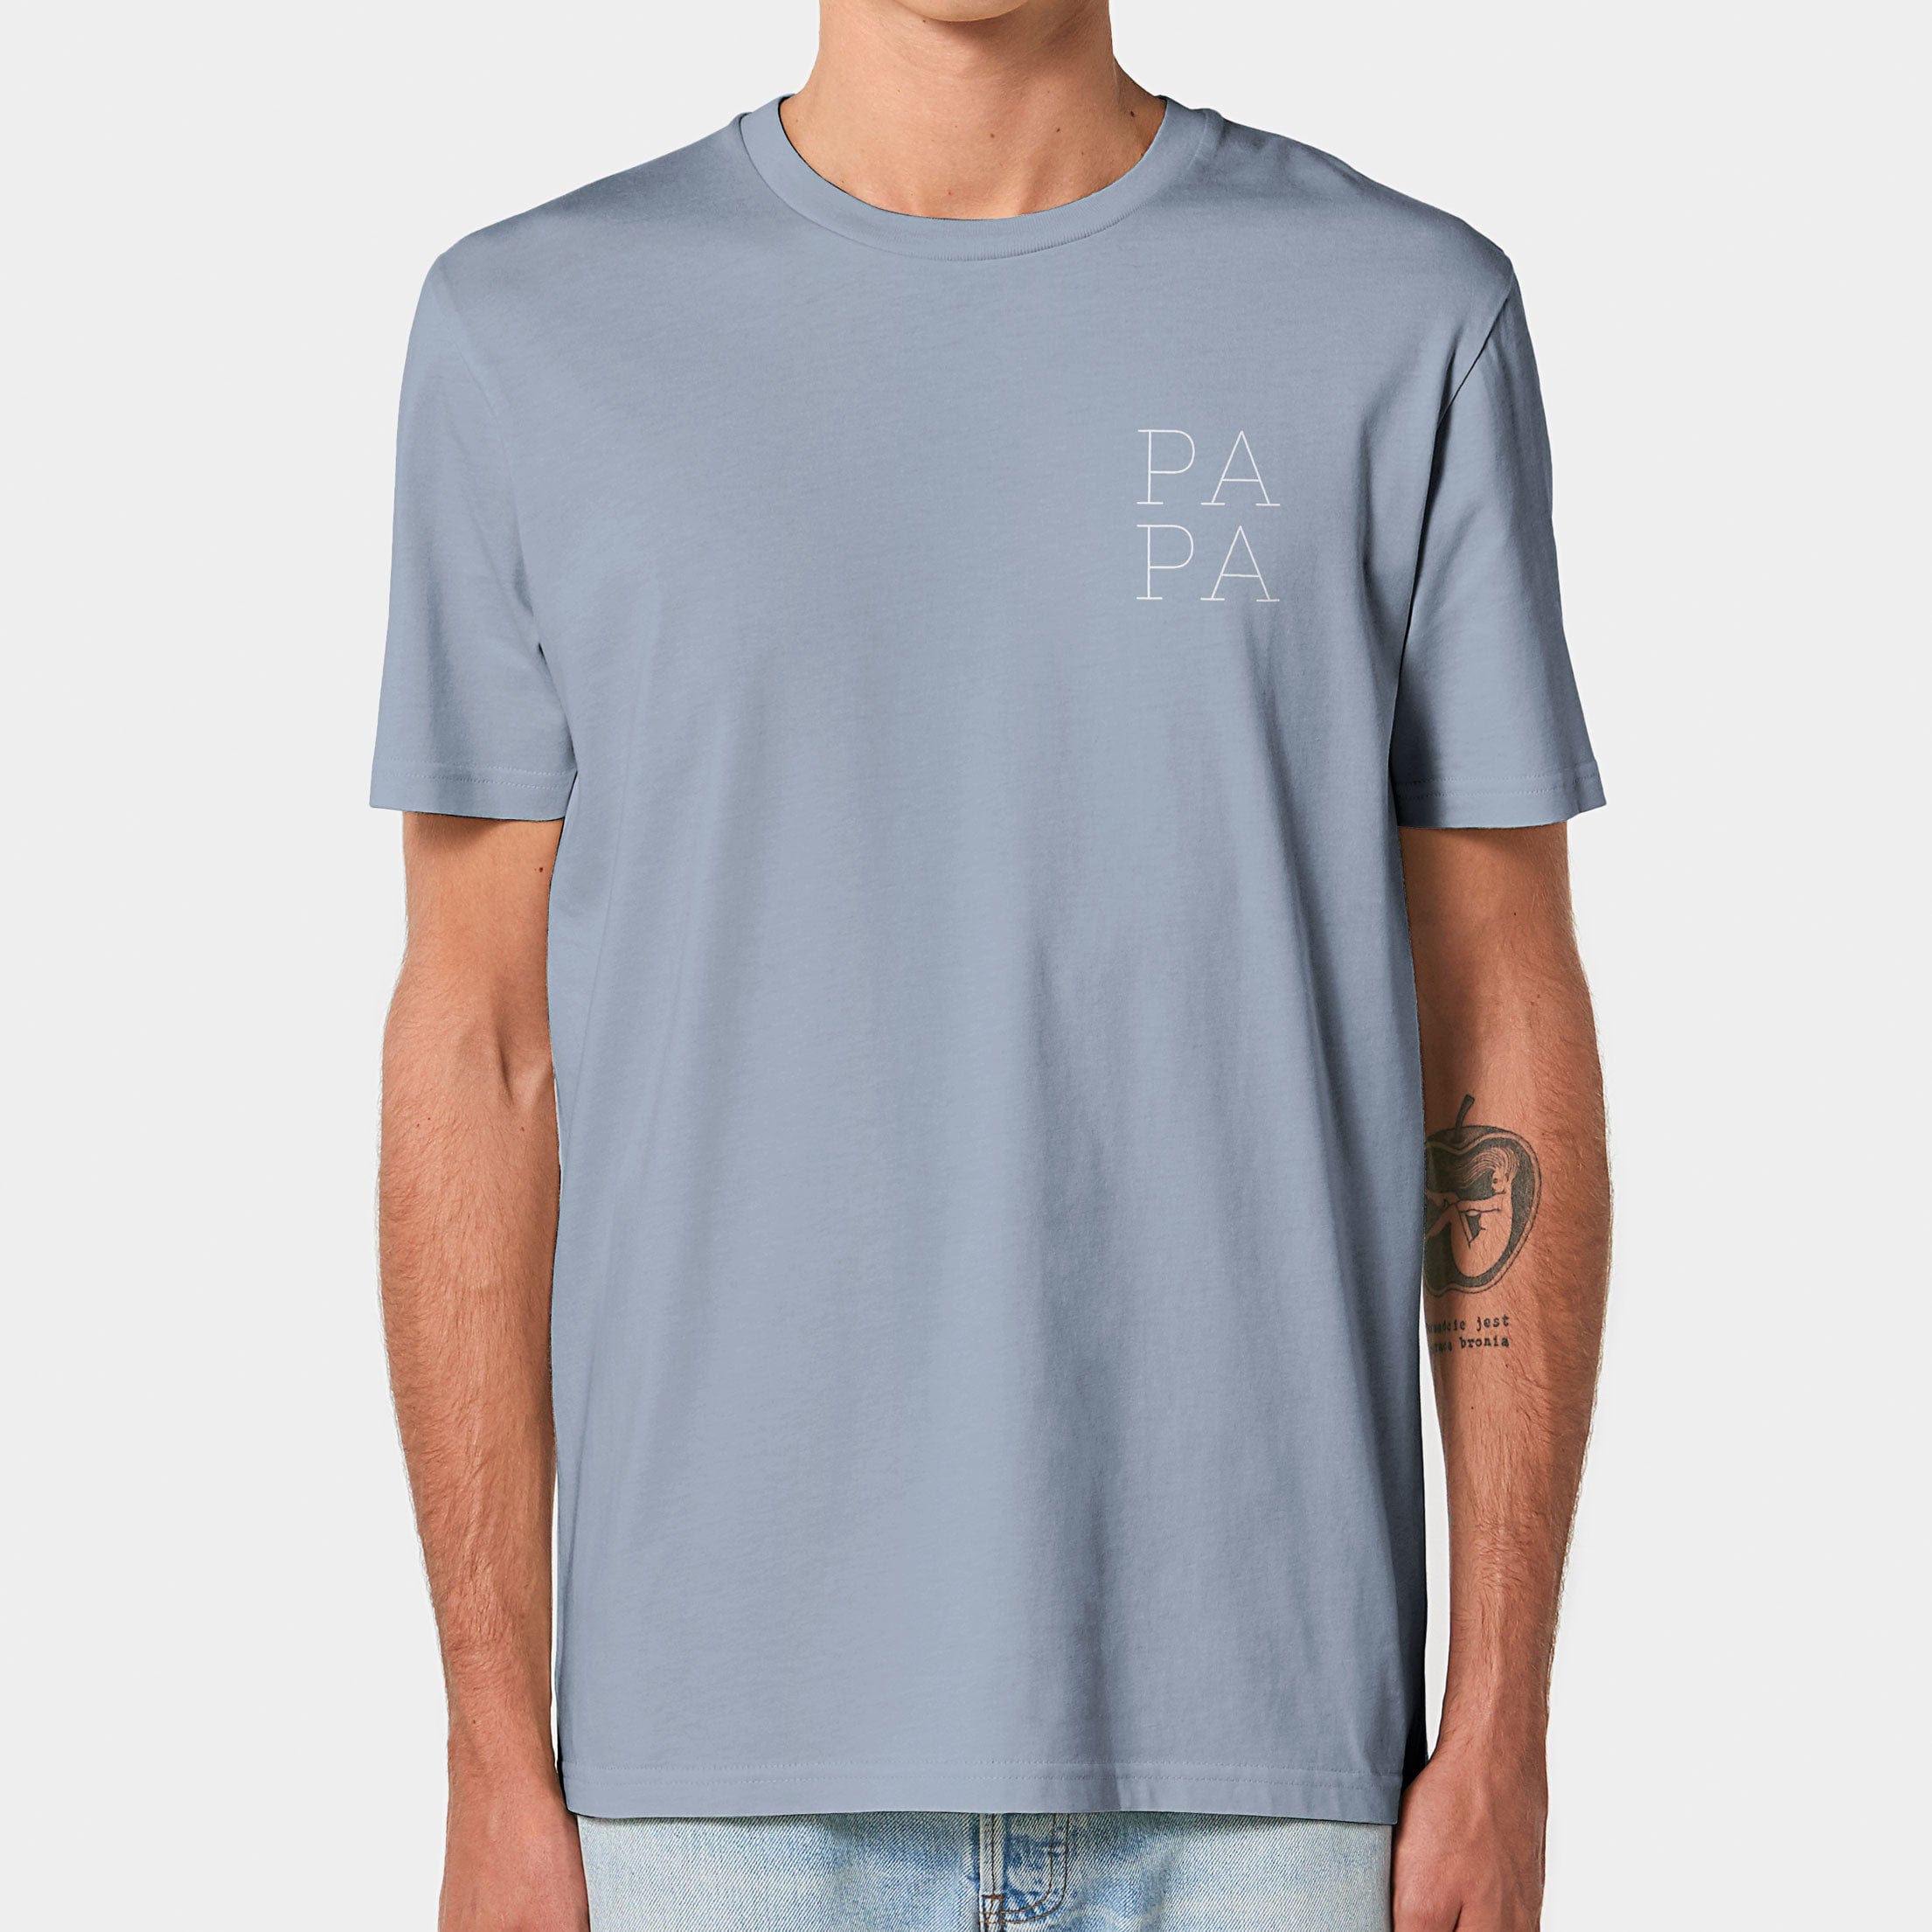 HEITER & LÄSSIG T-Shirt "Papa" S / serene blue - aus nachhaltiger und fairer Produktion